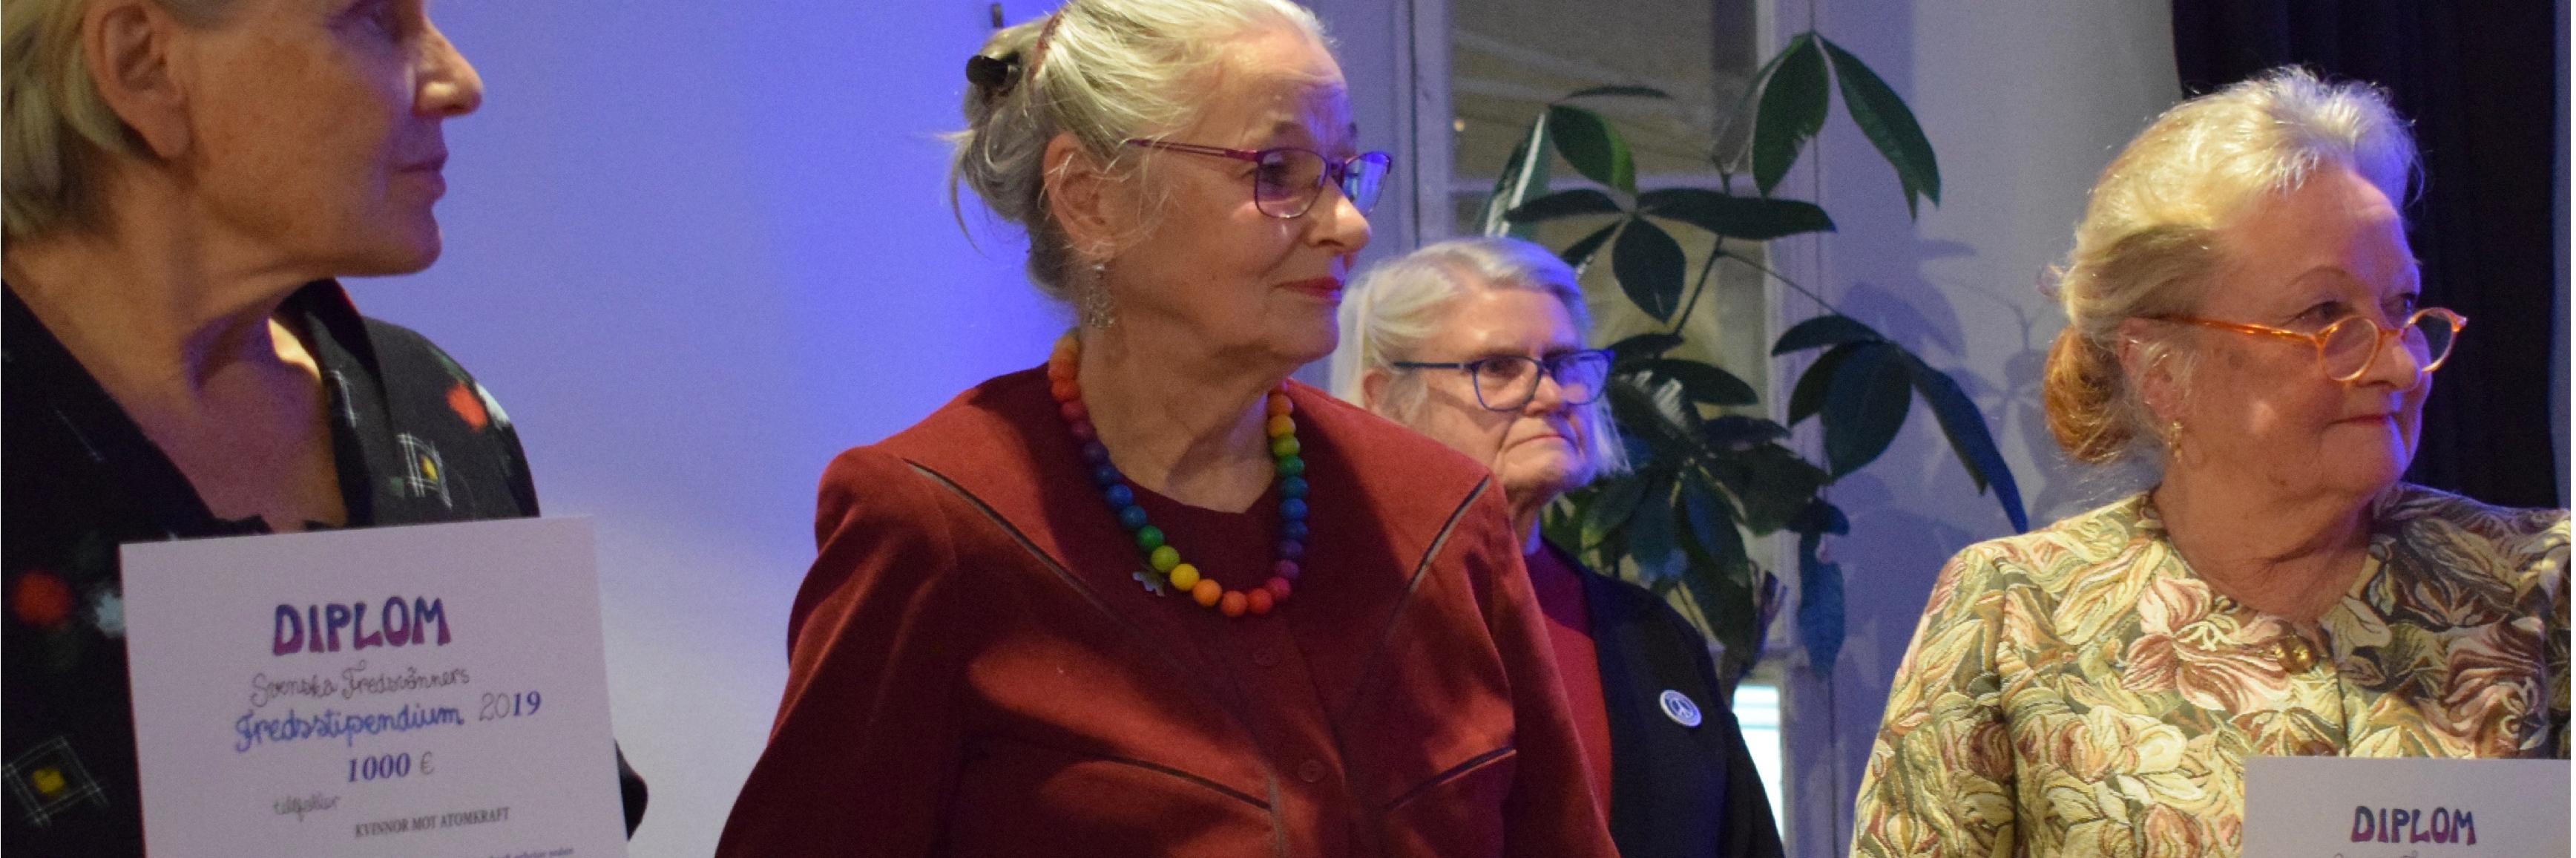 Pirkko Lindberg, Lea Launokari ja Ulla Klötzer vastaanottamassa rauhanpalkintoa.